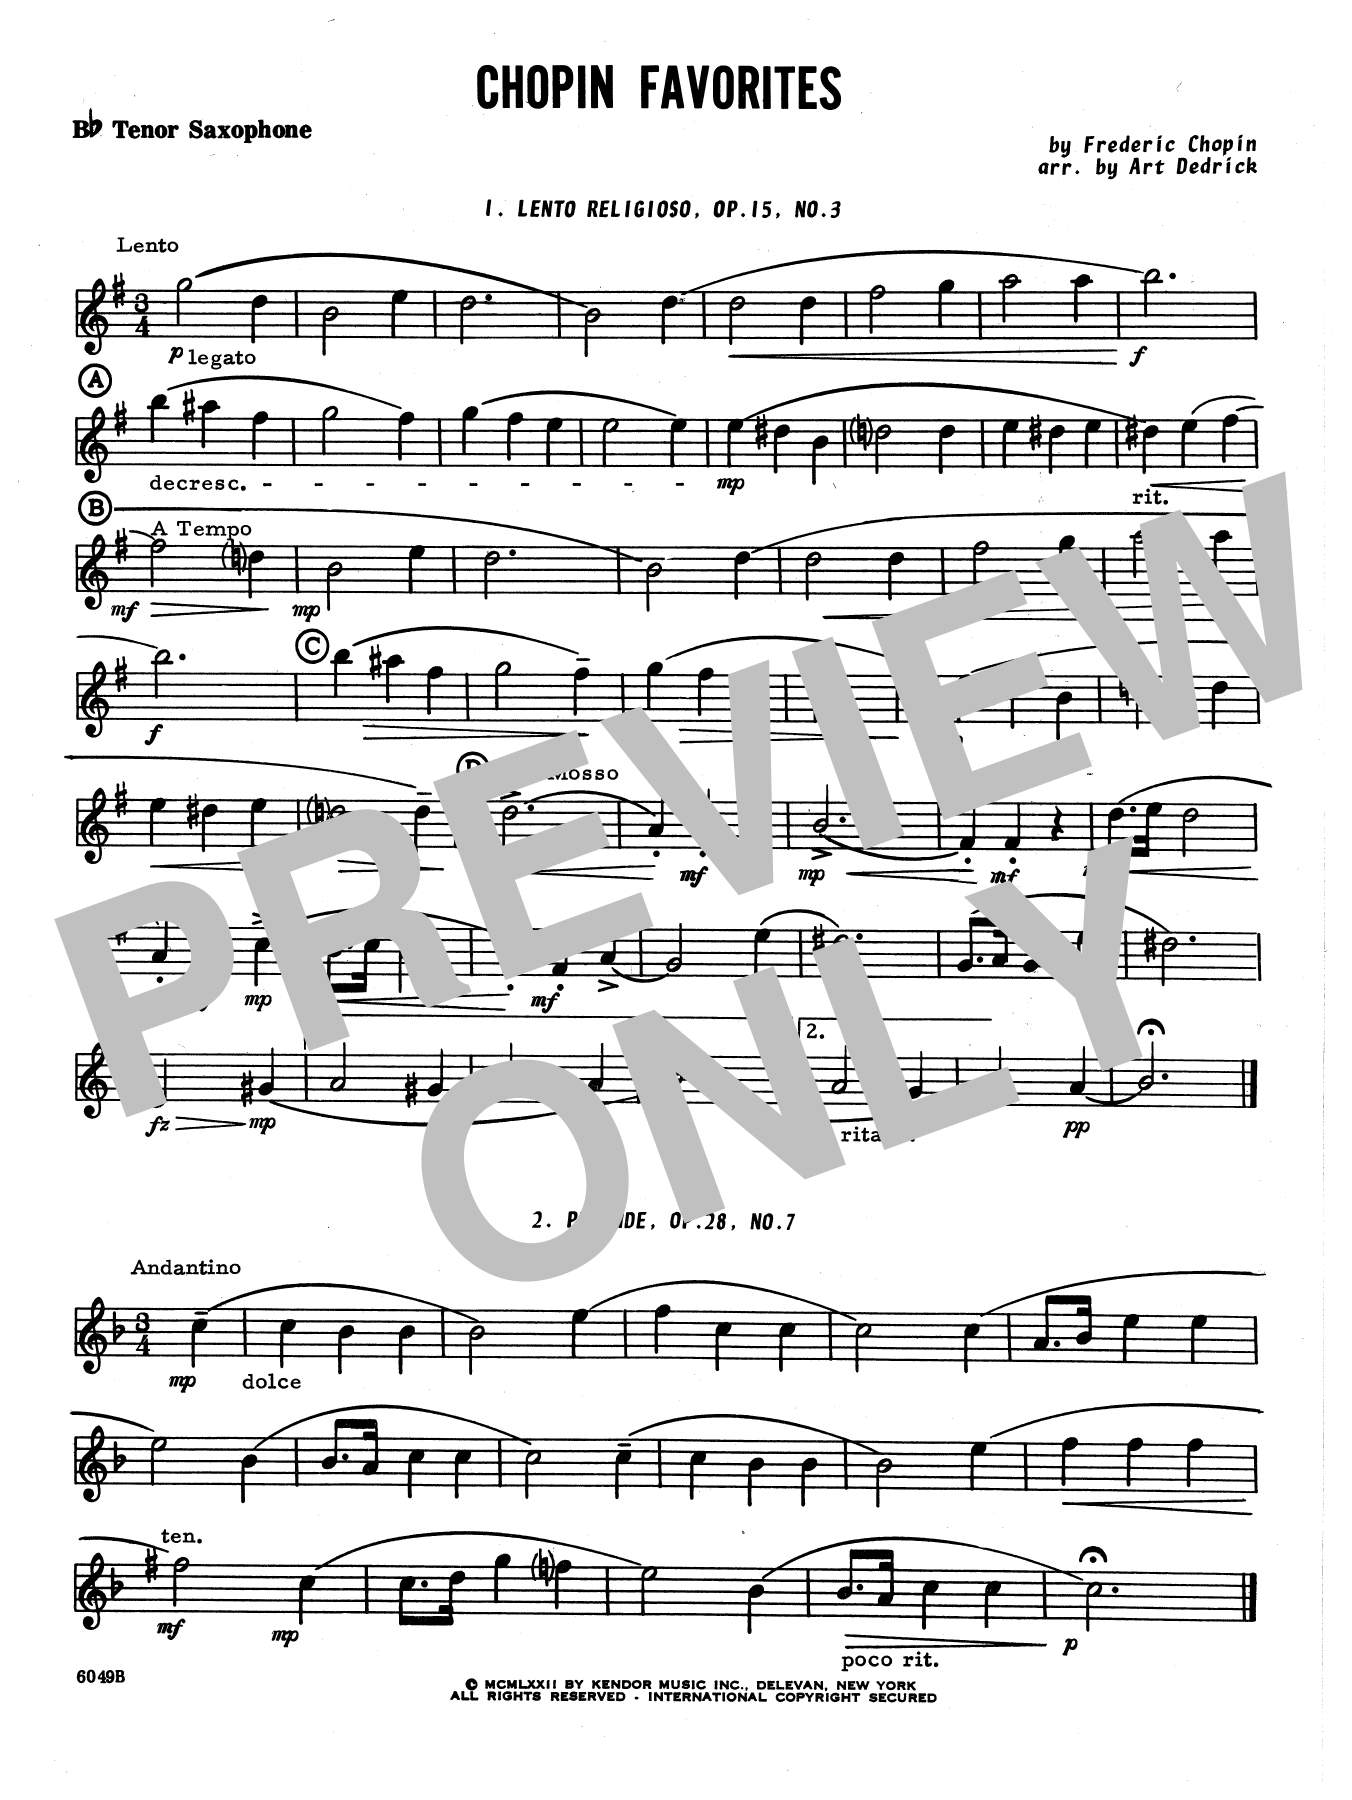 Download Art Dedrick Chopin Favorites - Bb Tenor Saxophone Sheet Music